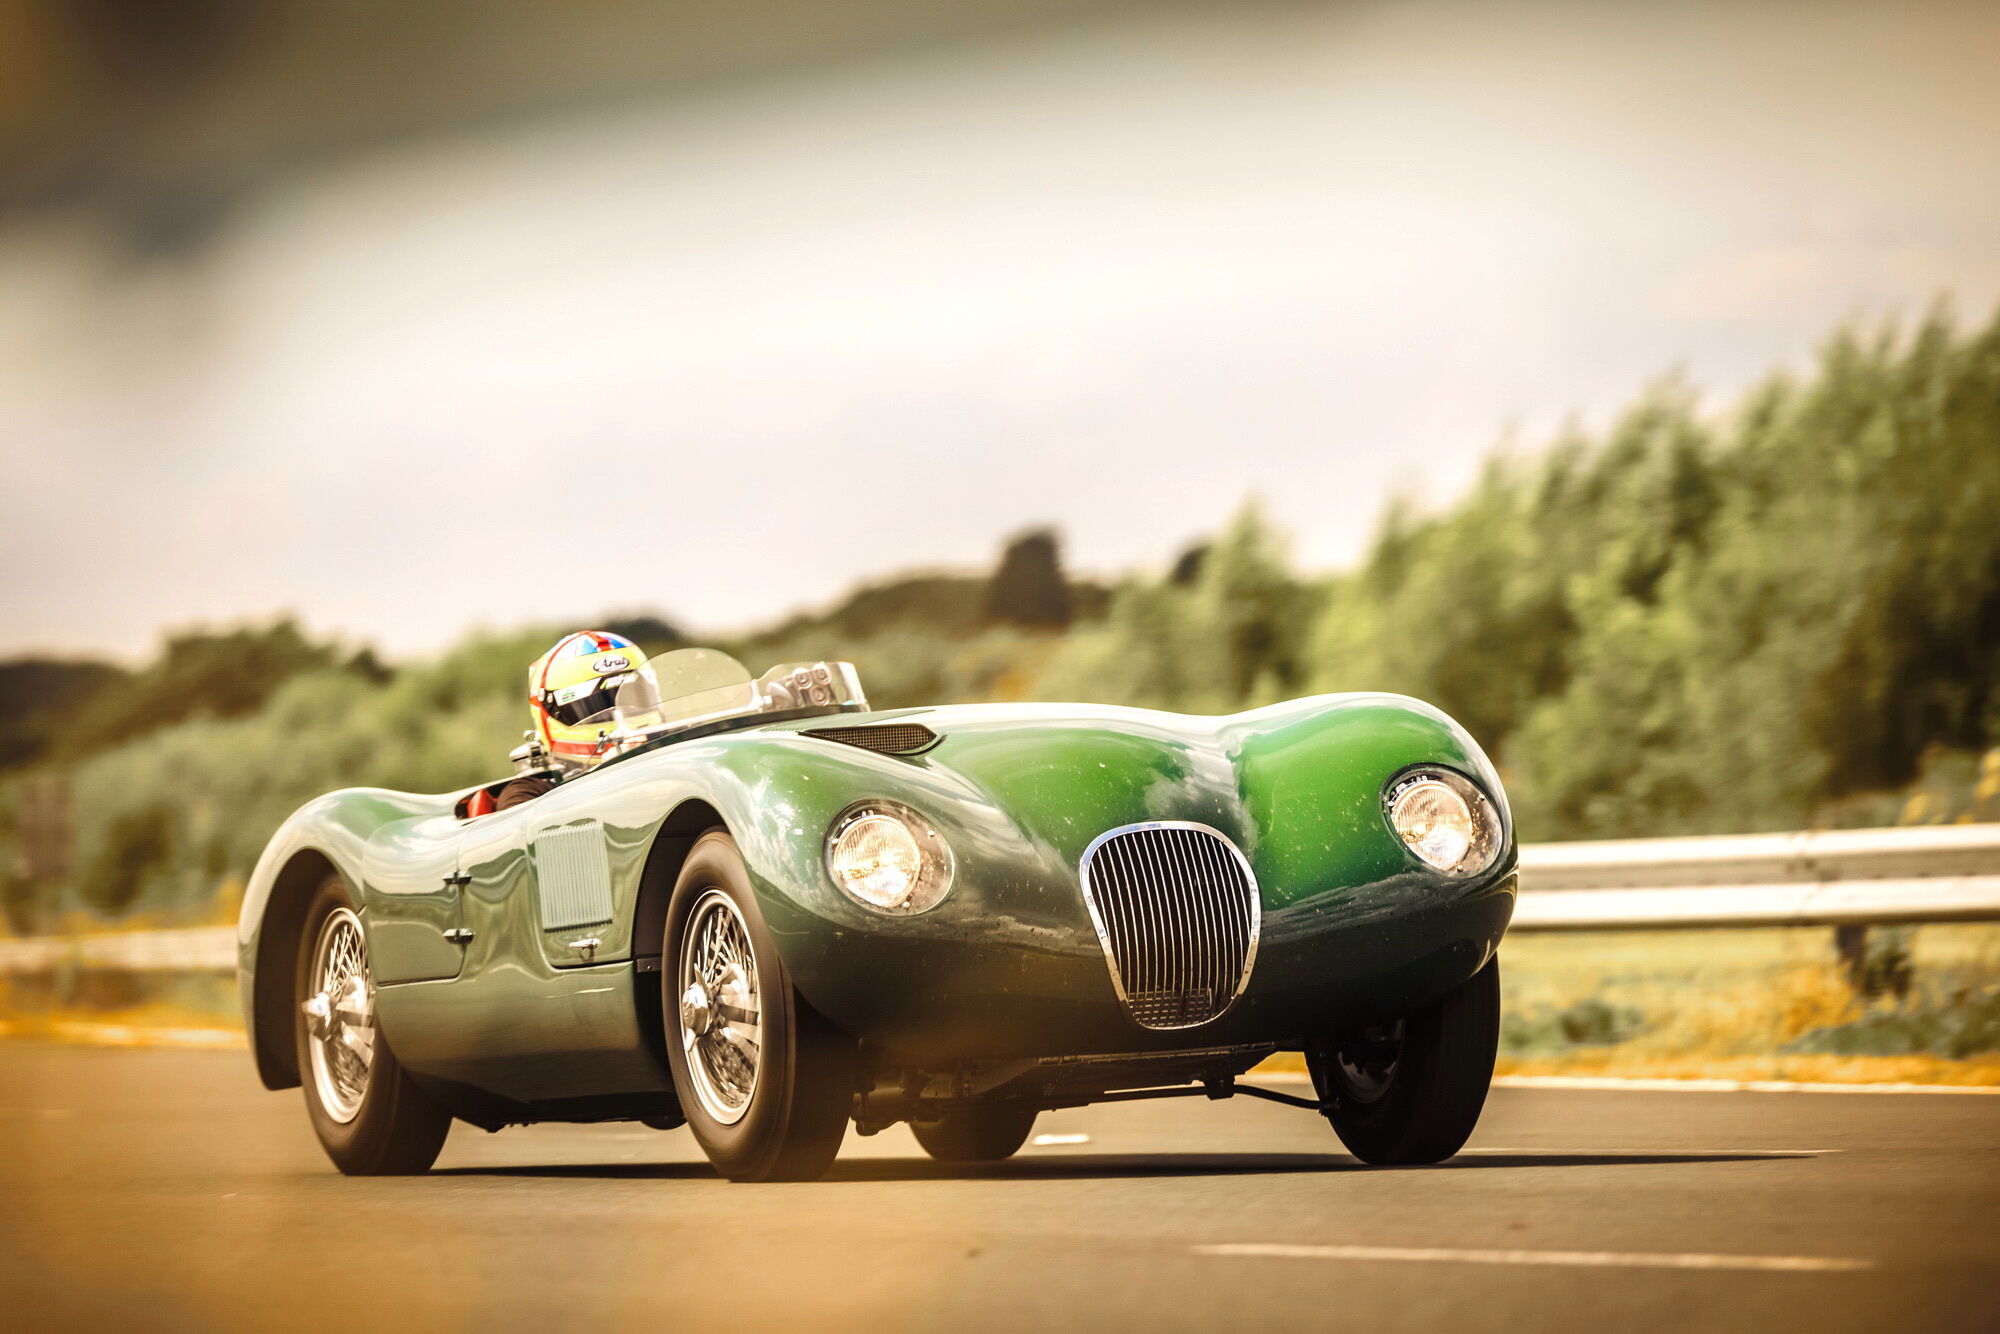 Усі спорткари будуть виготовлені вручну фахівцями фірмового підрозділу Jaguar Classic